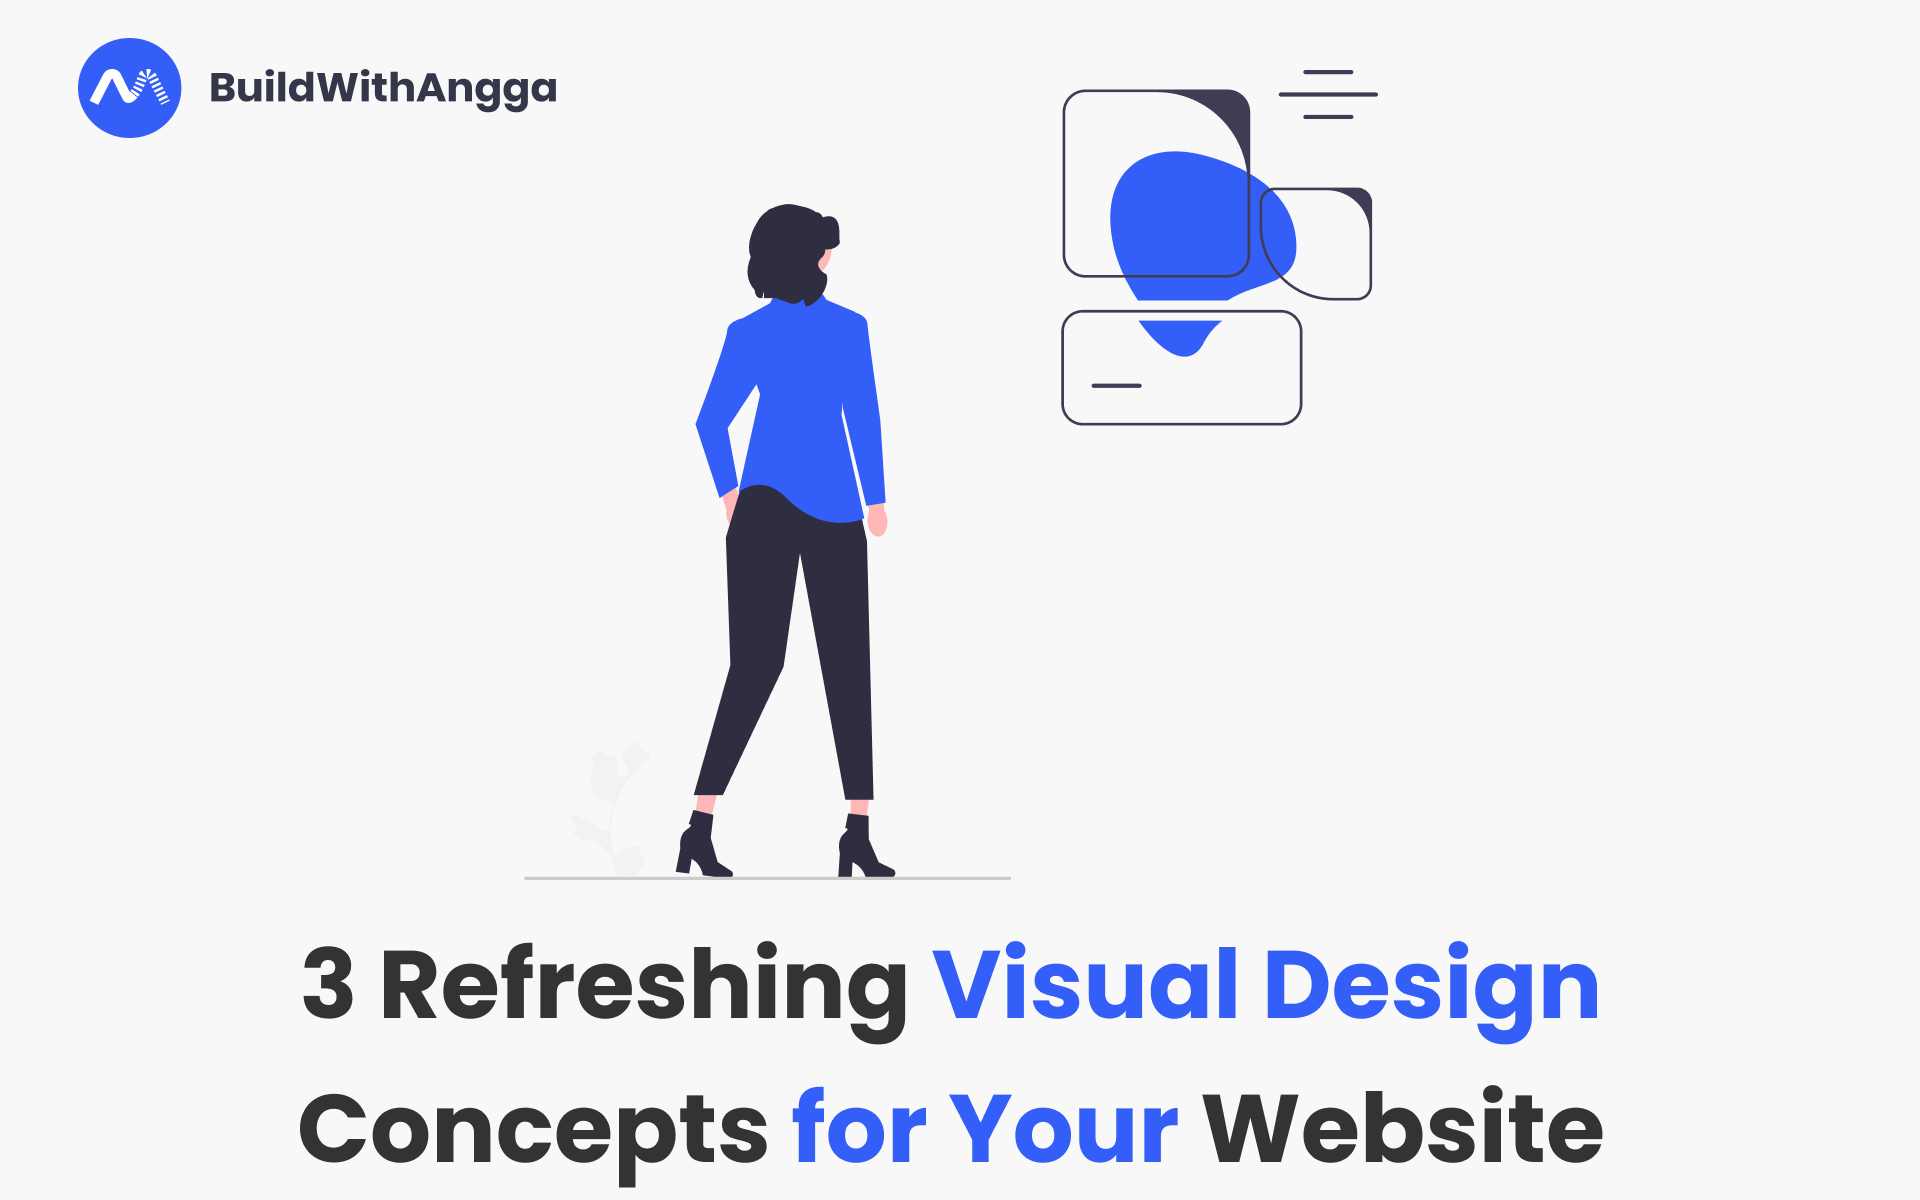 Kelas 3 Konsep Desain Visual yang Menyegarkan untuk Website kamu di BuildWithAngga